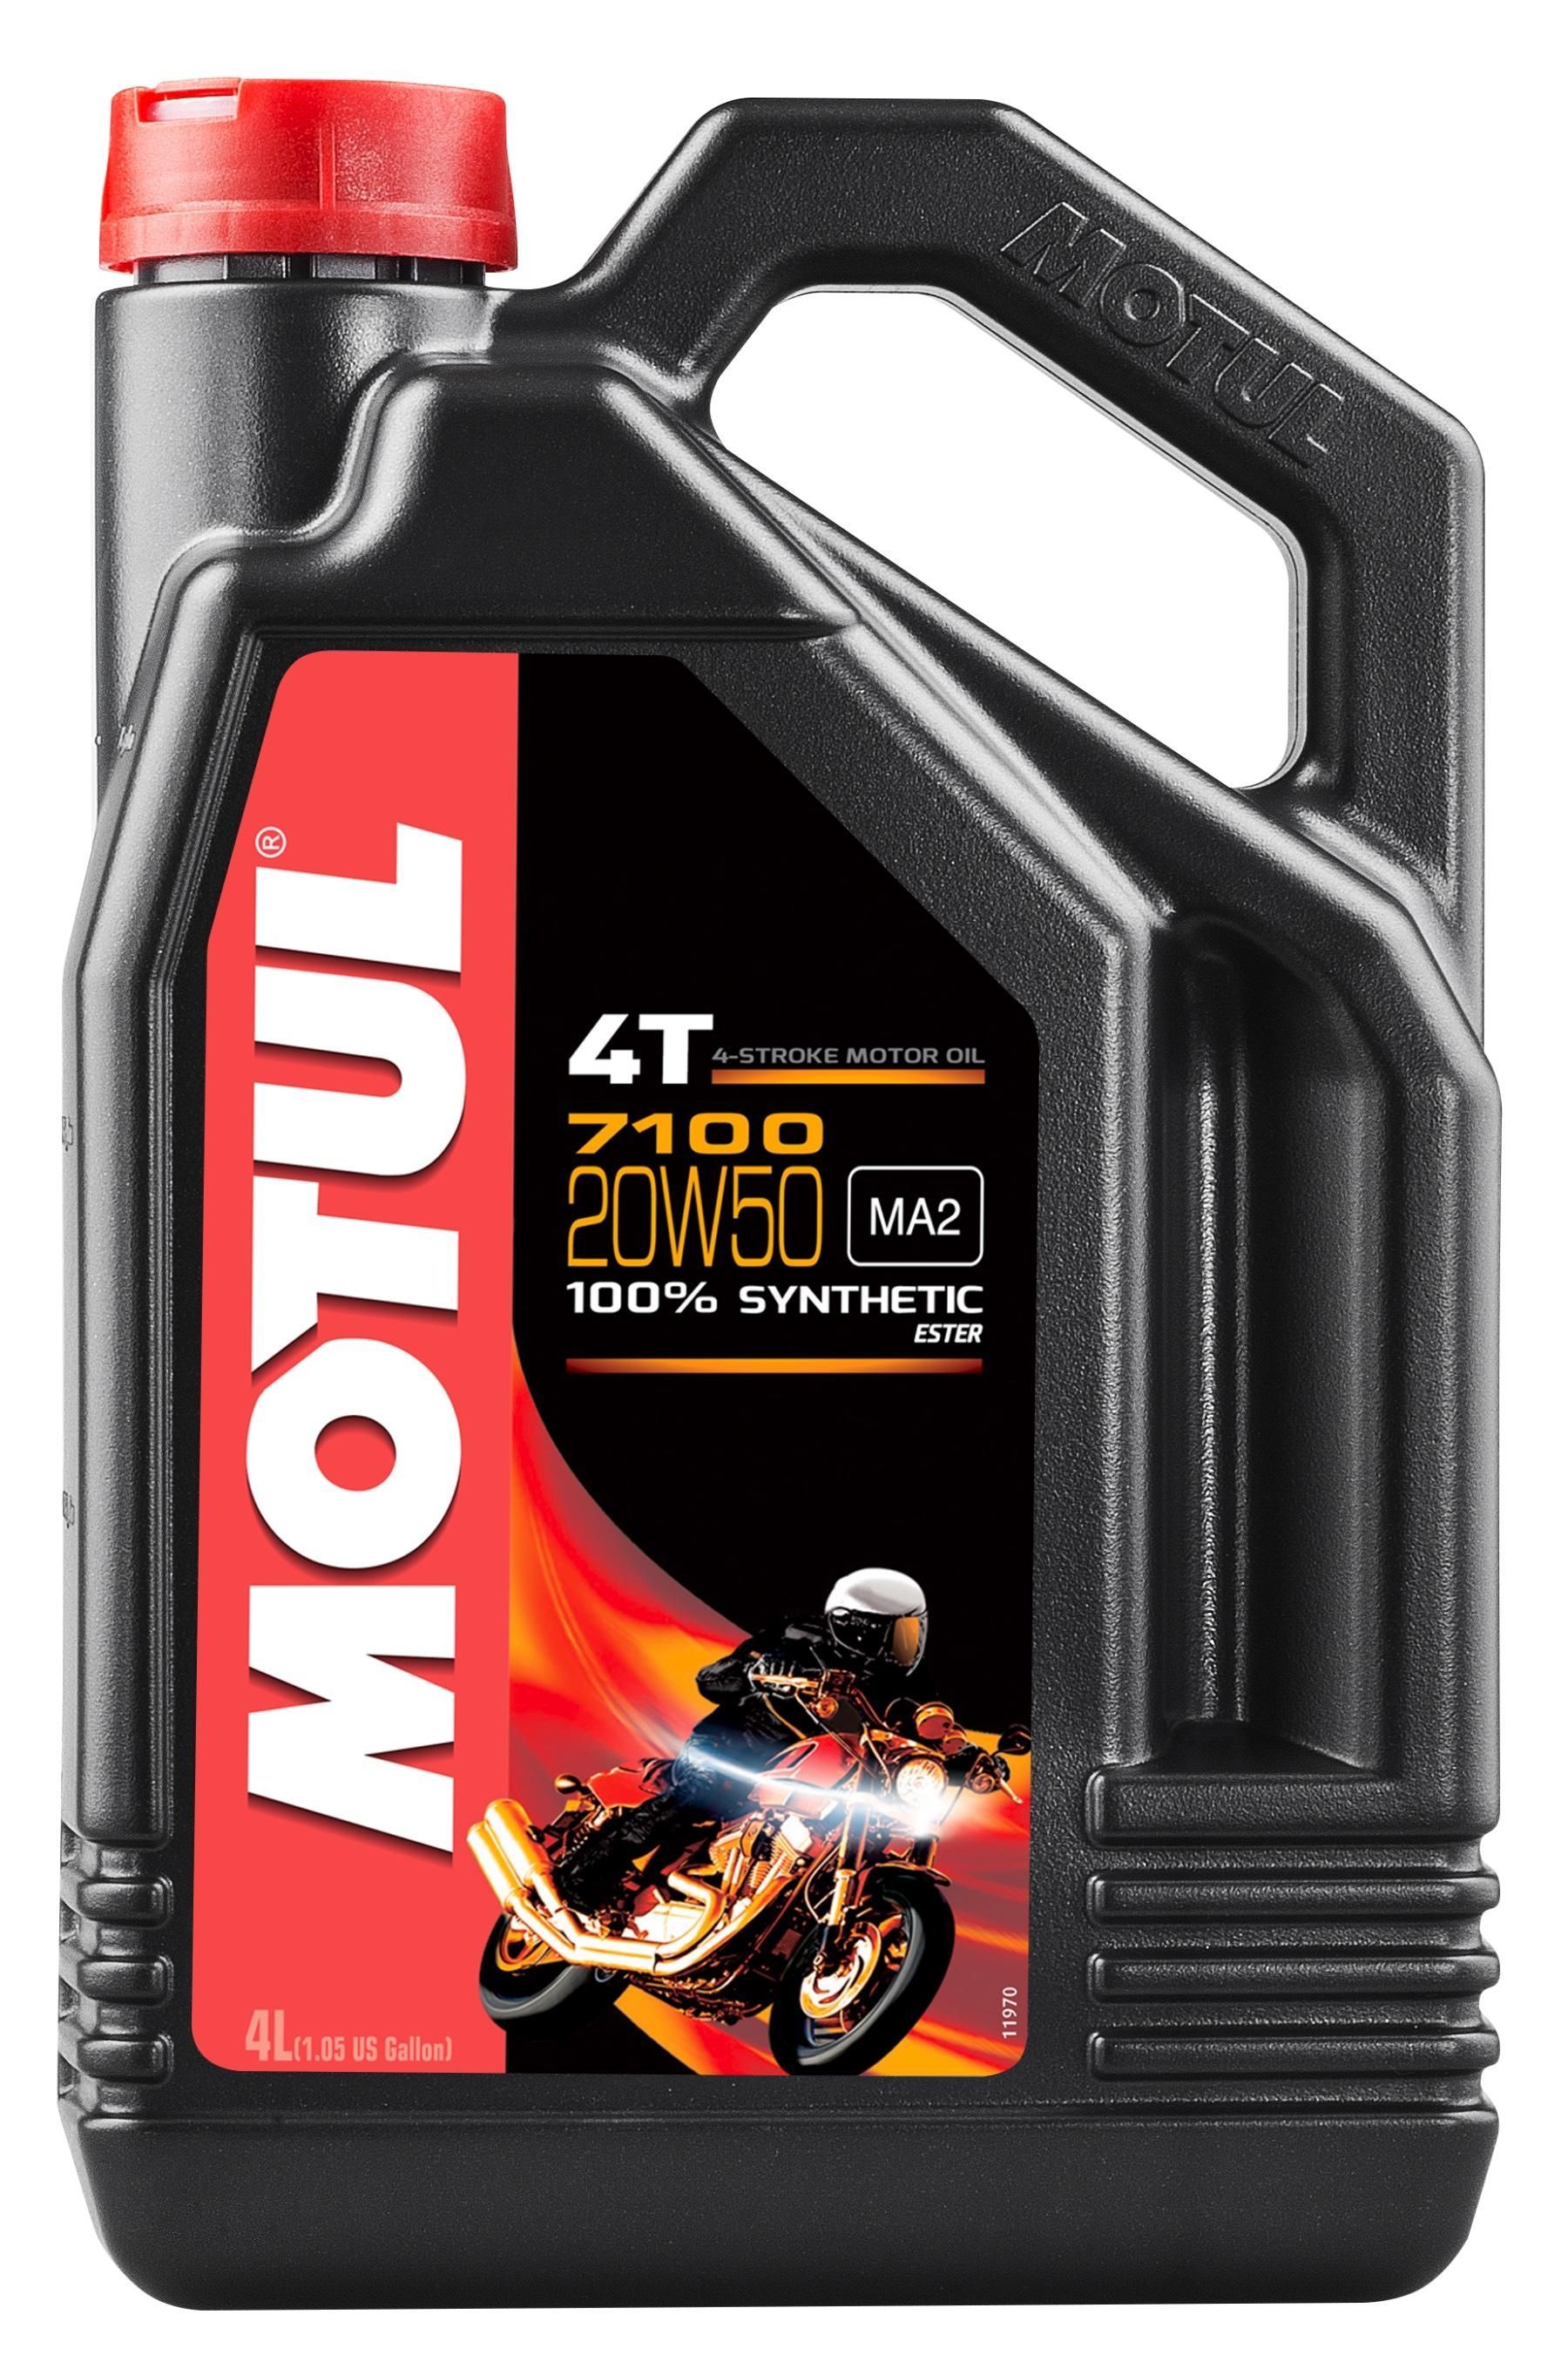 Моторное масло MOTUL 7100 4T 20W-50, 4 литра 20W50 (836441 / 104104)